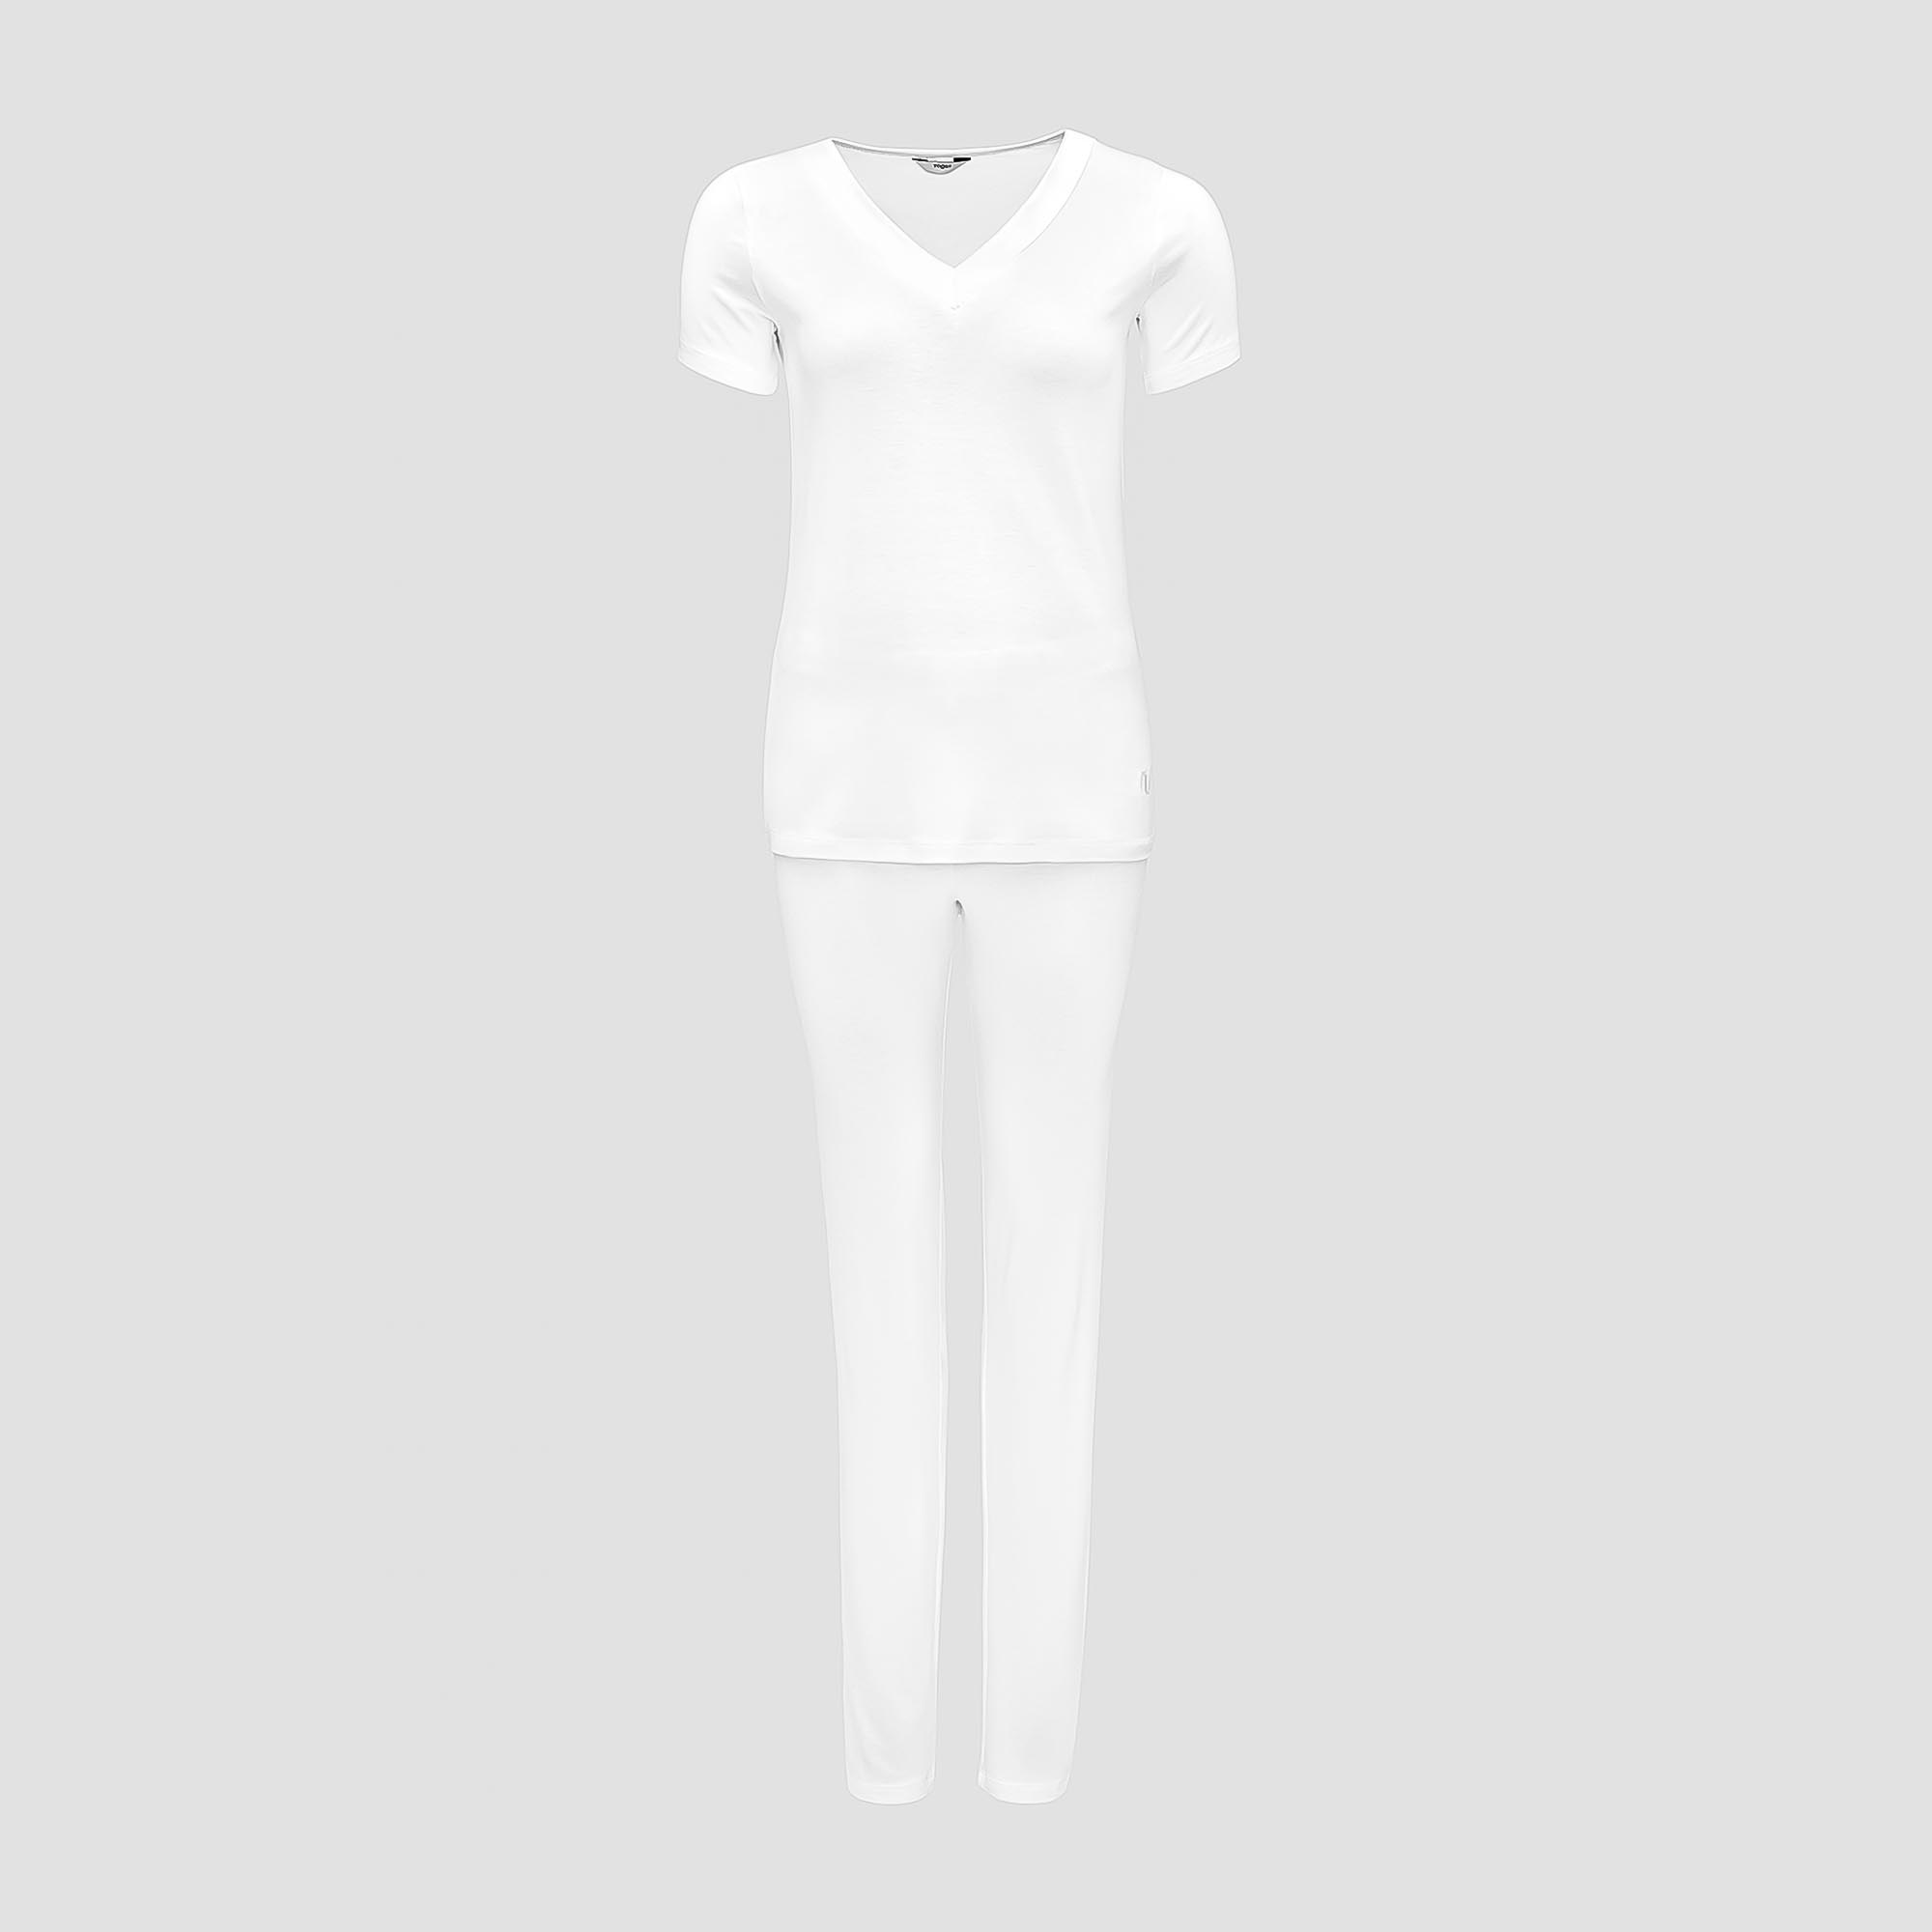 Пижама Togas Ингелла белая женская XL(50) 2 предмета